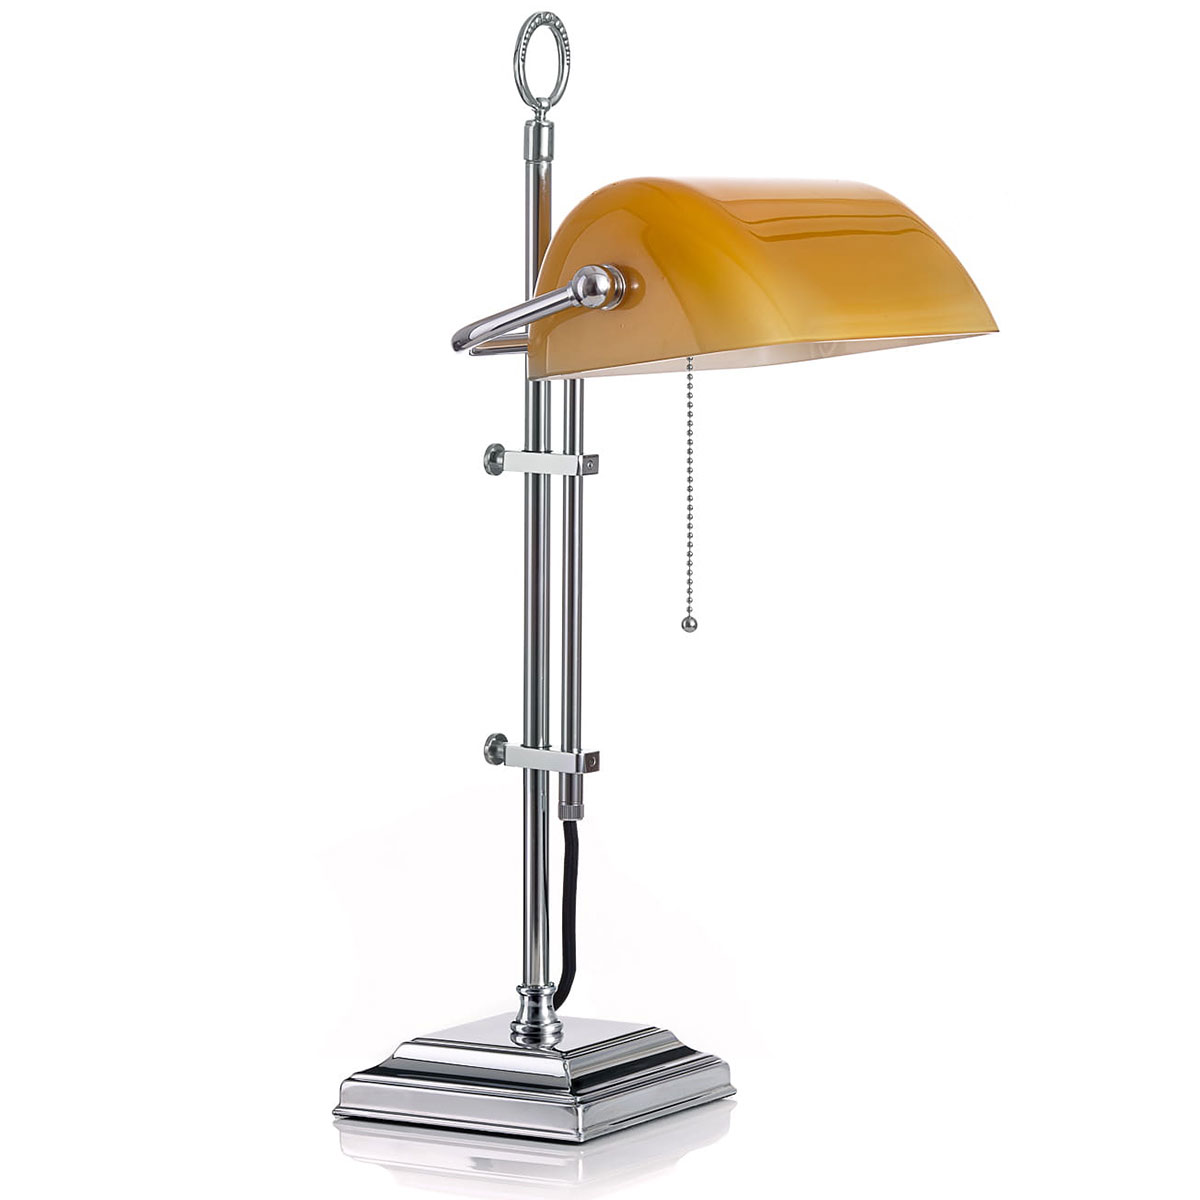 Banker’s Lamp – klassische Schreibtischleuchte mit Glasschirm: Oberfläche verchromt, mit glattem Gestänge, Cognac-farbenener Glas-Schirm